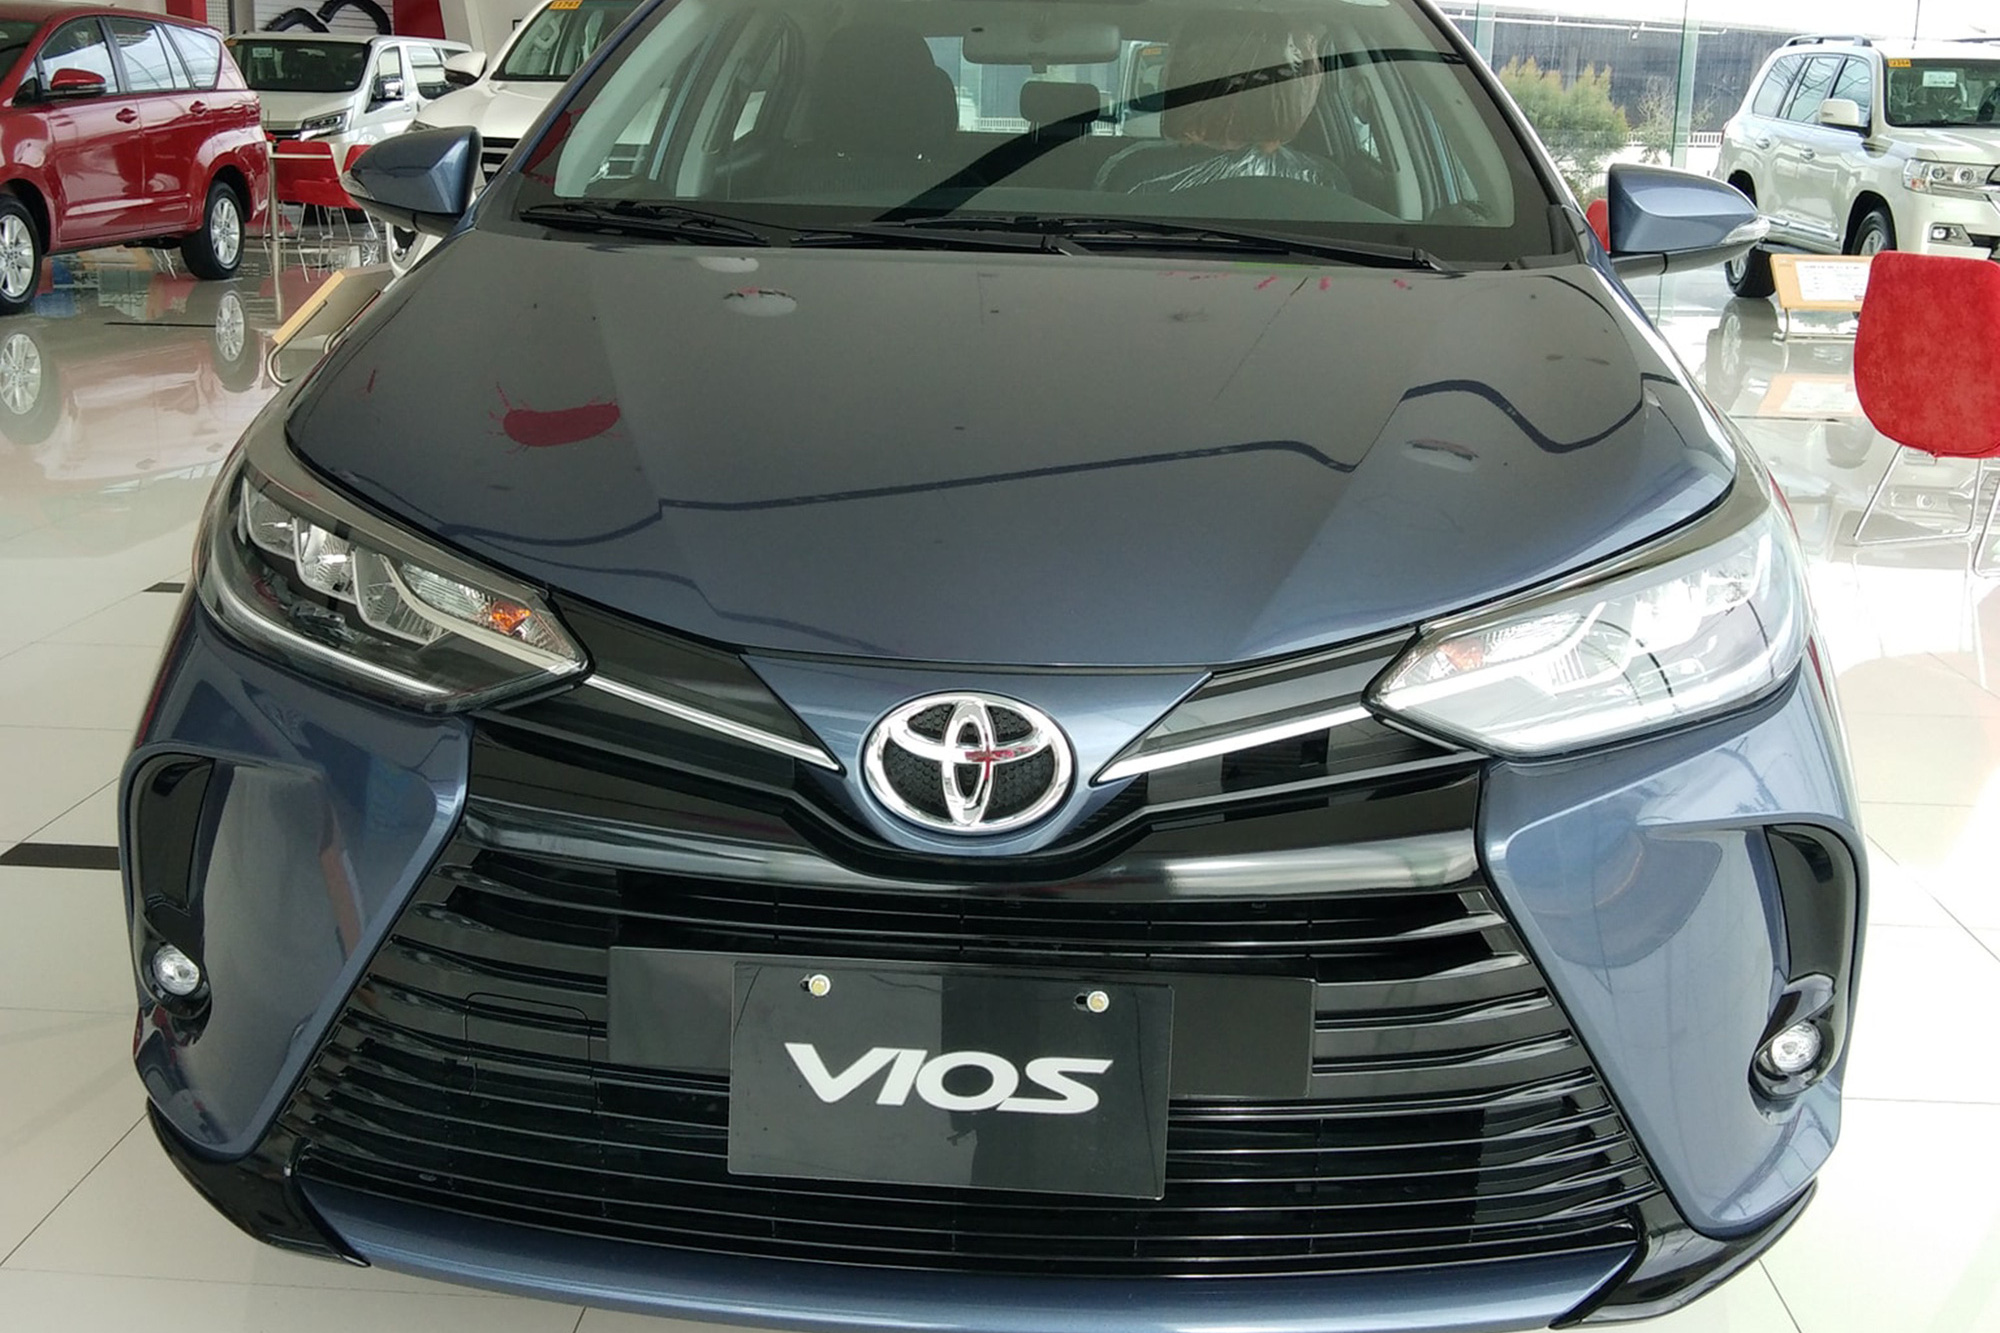 Chi tiết Toyota Vios 2021 tại đại lý: Đẹp hơn trong ảnh, đáng để người Việt chờ đợi